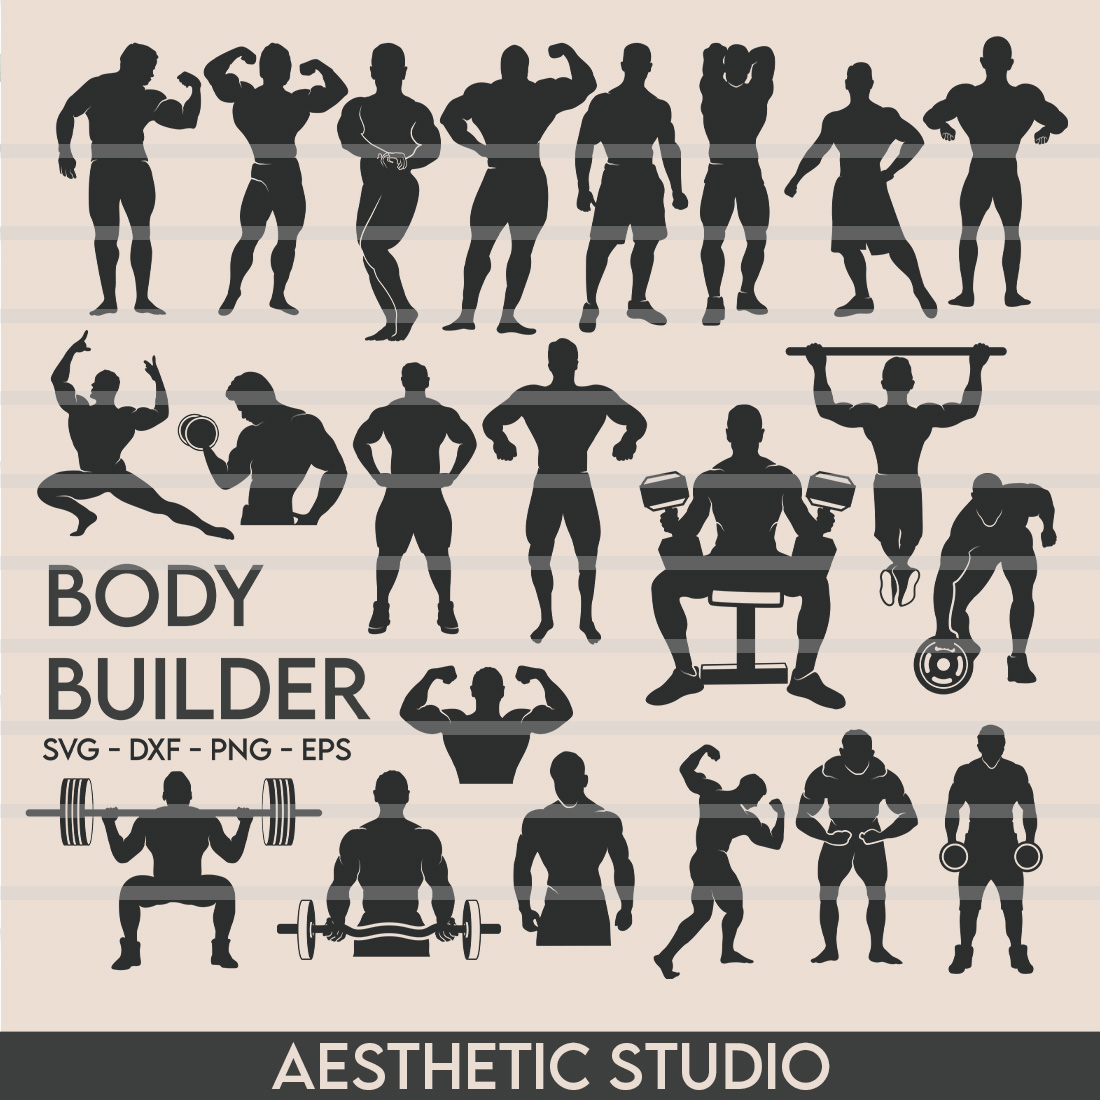 Bodybuilder SVG, Gym Svg, Muscle Man Svg, Workout Svg, Bodybuilder Clipart, Fitness Svg, Muscle Man Vector, Silhoette, Weights Svg, Dxf, Png, Eps, Cut file cover image.